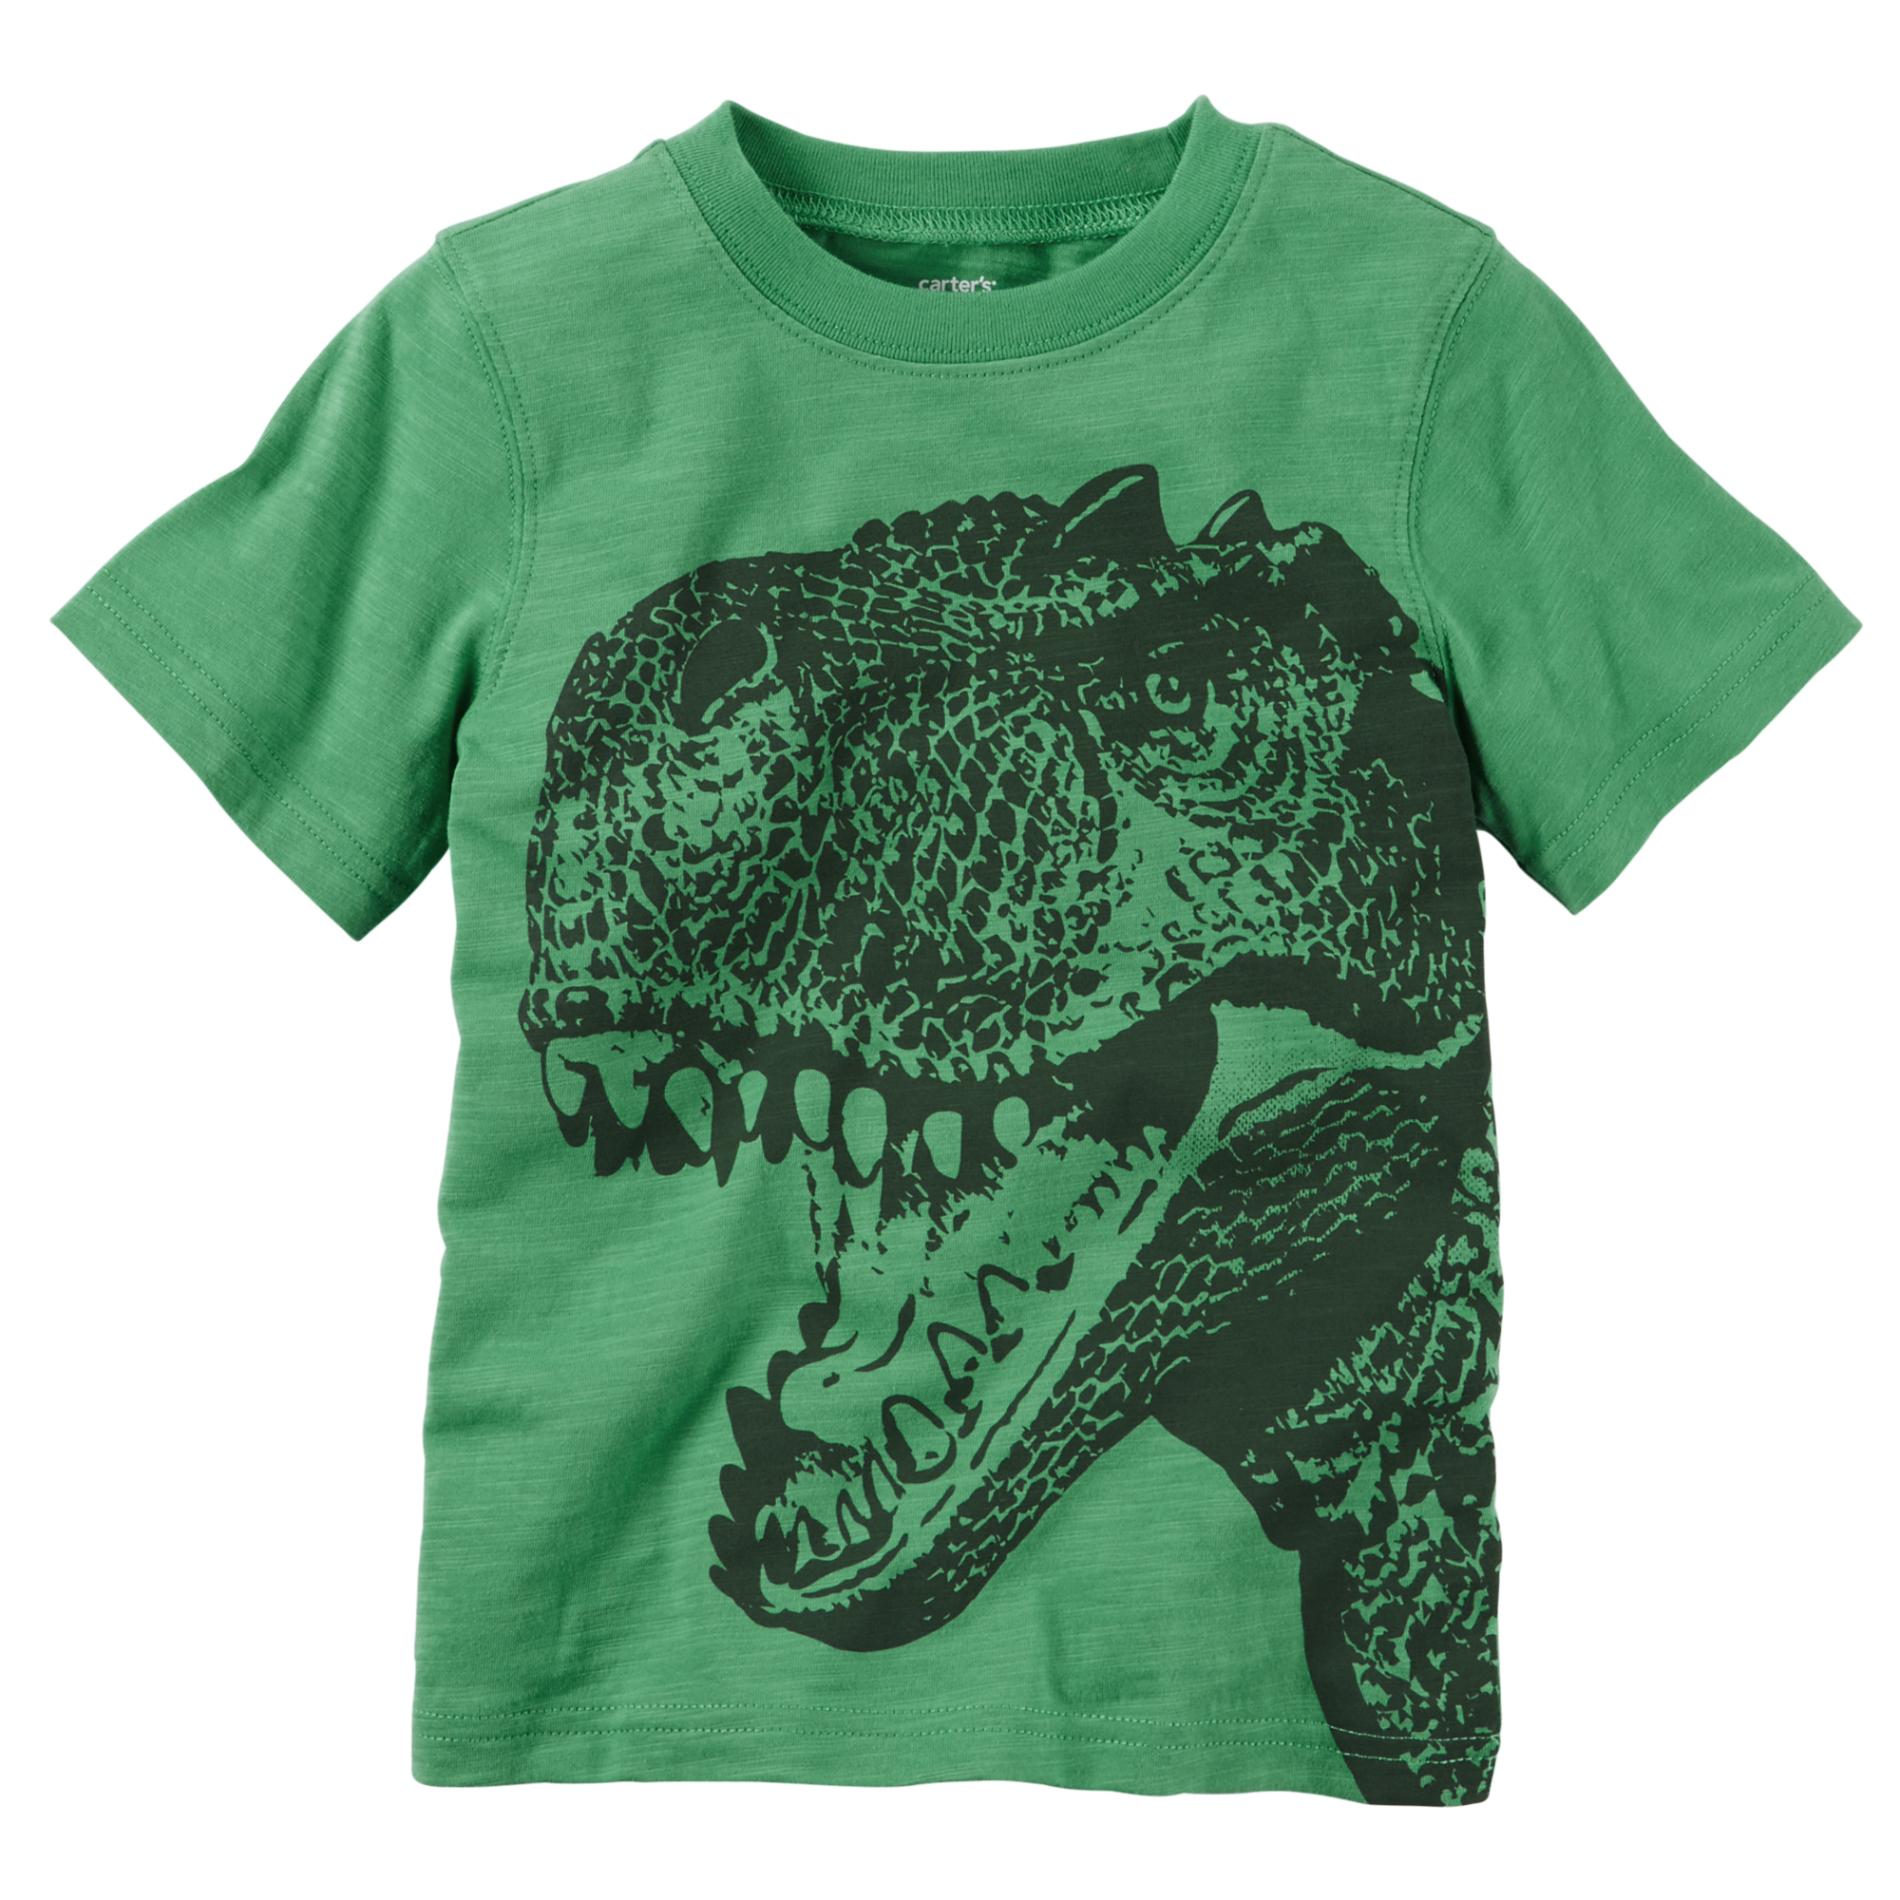 Carter's Boy's Graphic T-Shirt - T .Rex